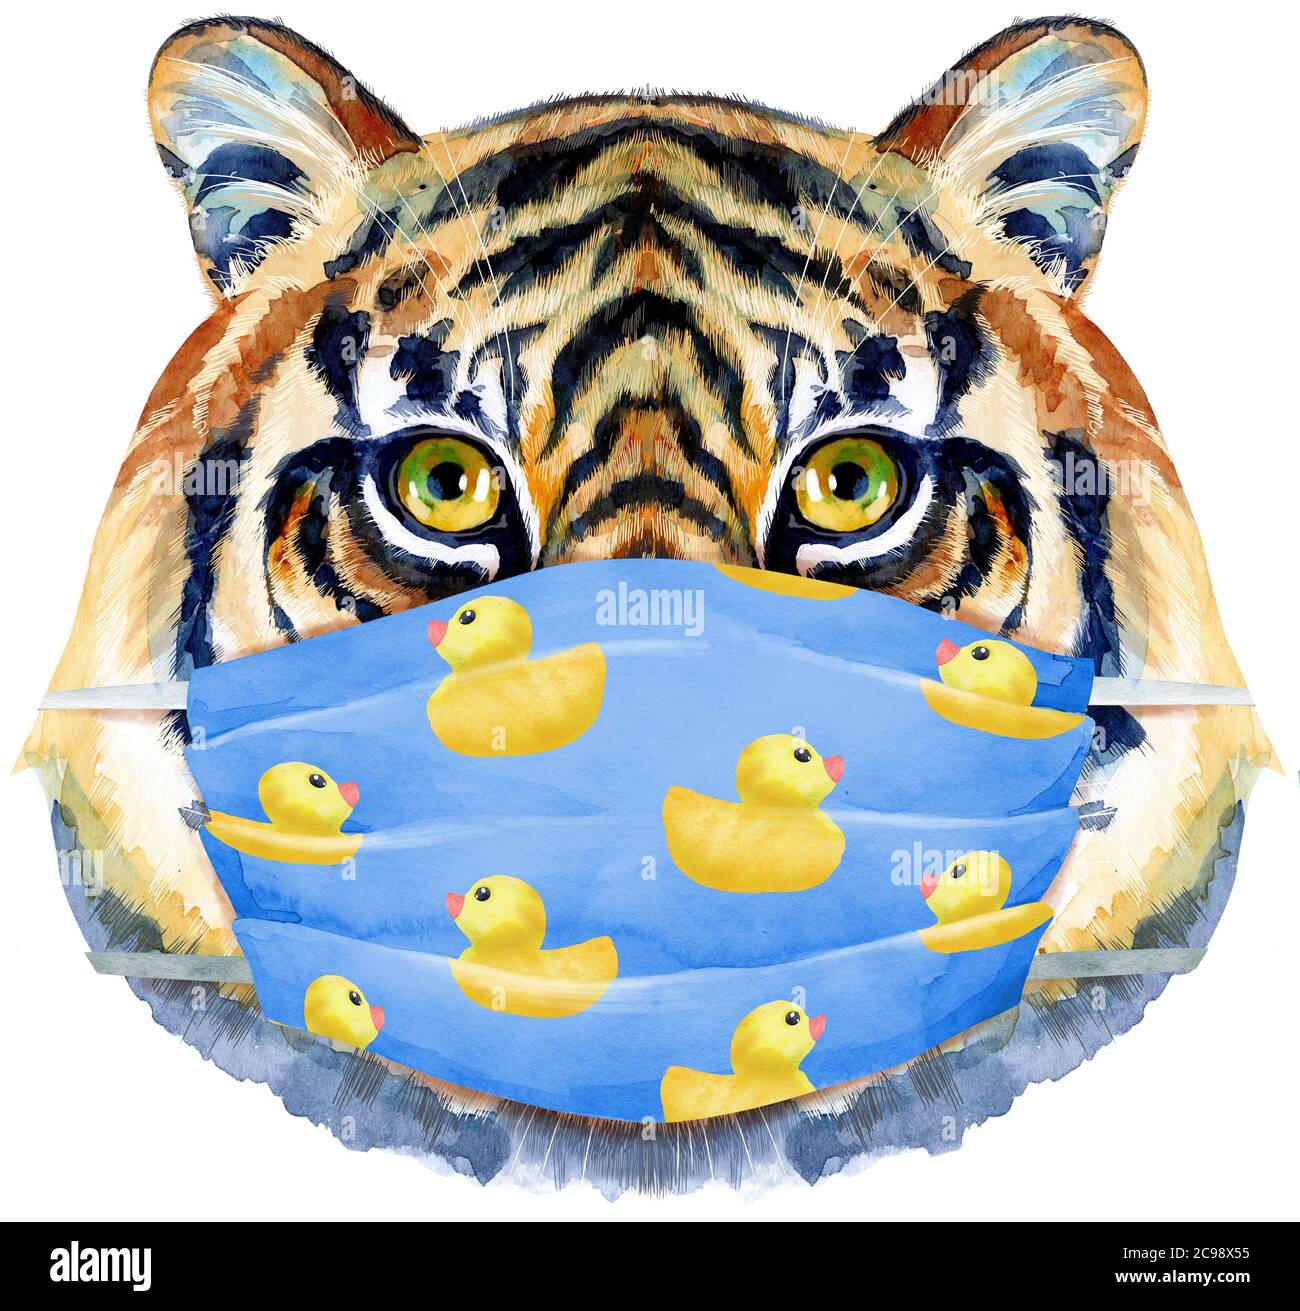 Tête de tigre dans un masque de protection bleu isolé sur fond blanc. Banque D'Images